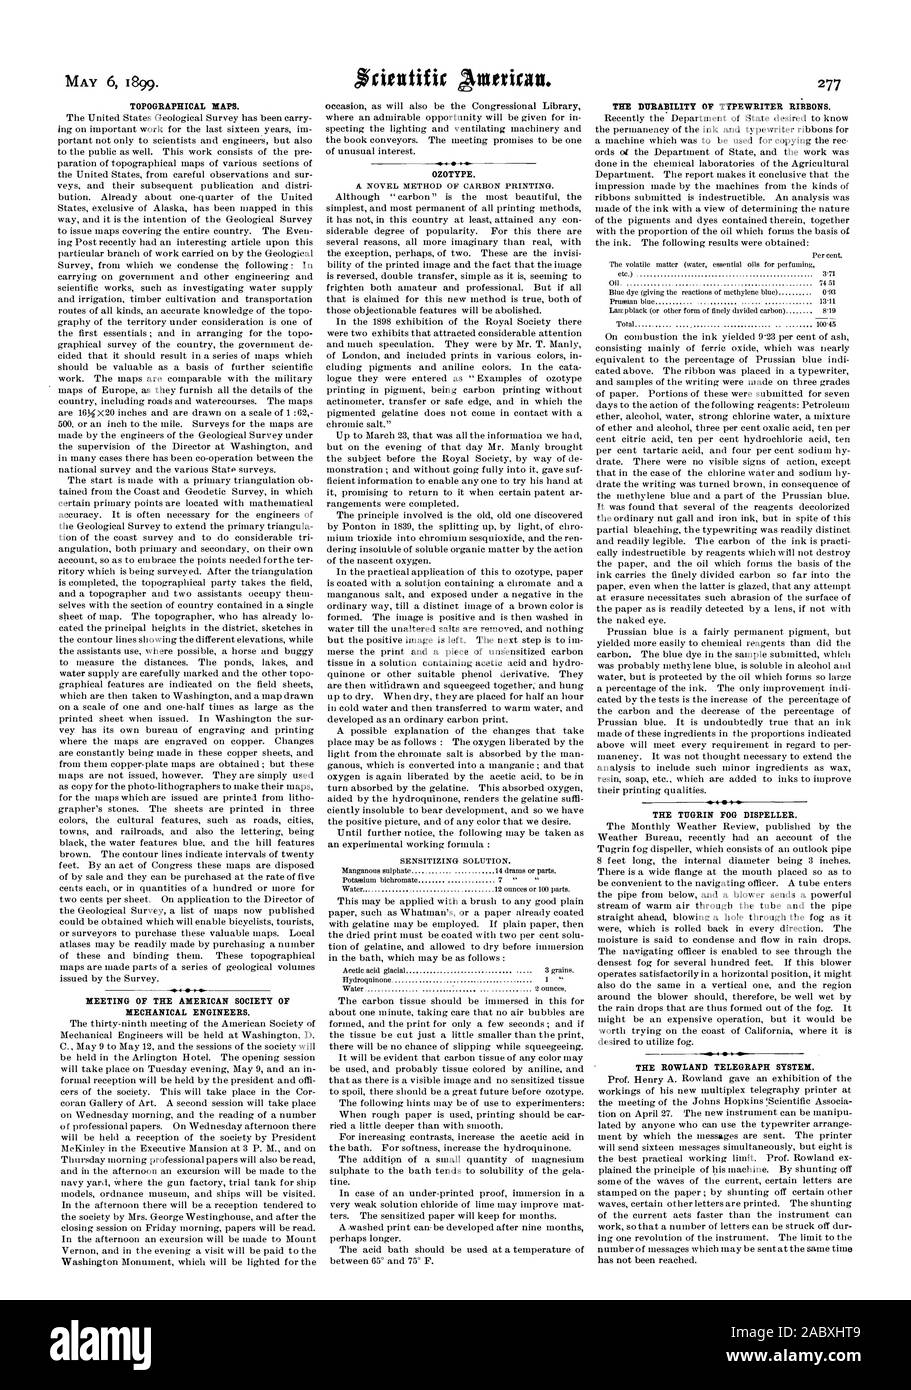 Il 6 maggio 1899. Mappe topografiche. Riunione della società americana di Ingegneri Meccanici. OZOTYPE. La durata dei nastri per macchine da scrivere. La nebbia TIIGRIN DISPELLER. La ROWLAND TELEGRAFI., Scientific American, 1899-05-06 Foto Stock